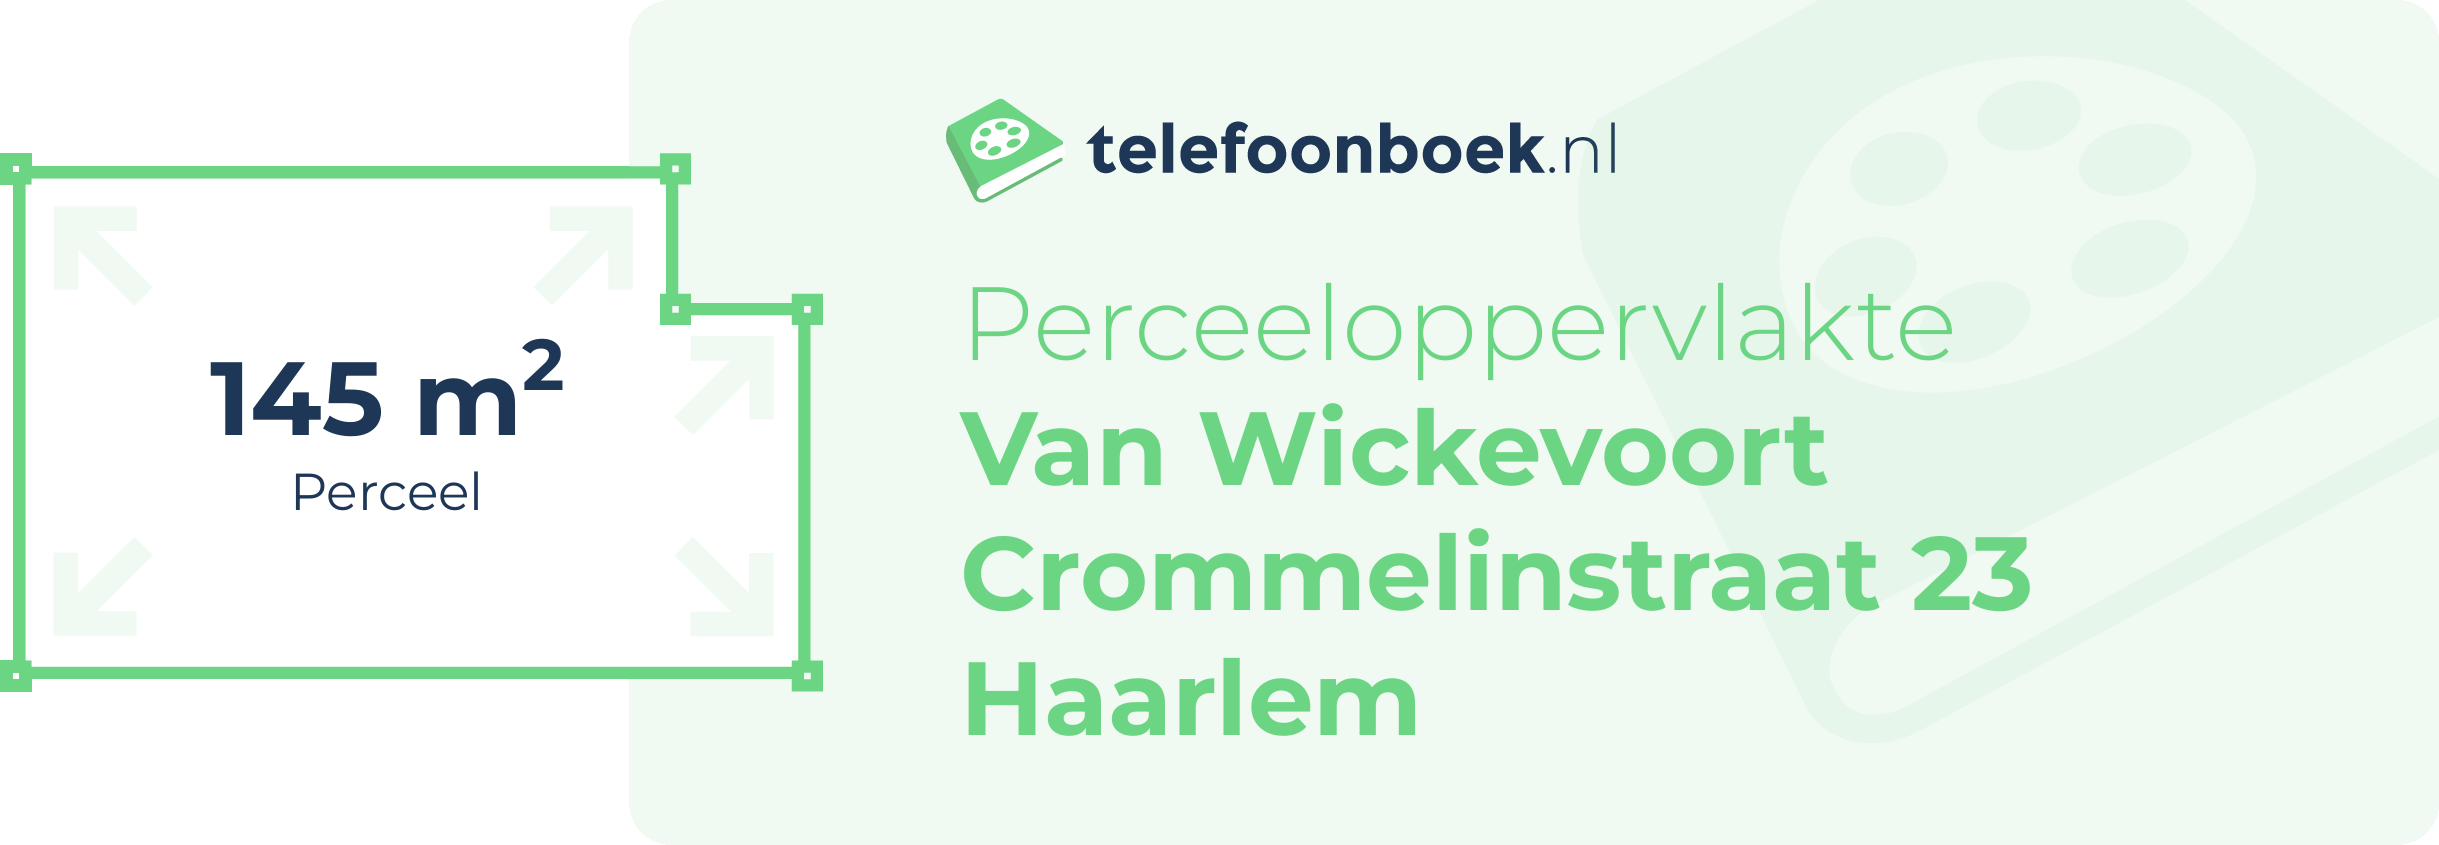 Perceeloppervlakte Van Wickevoort Crommelinstraat 23 Haarlem